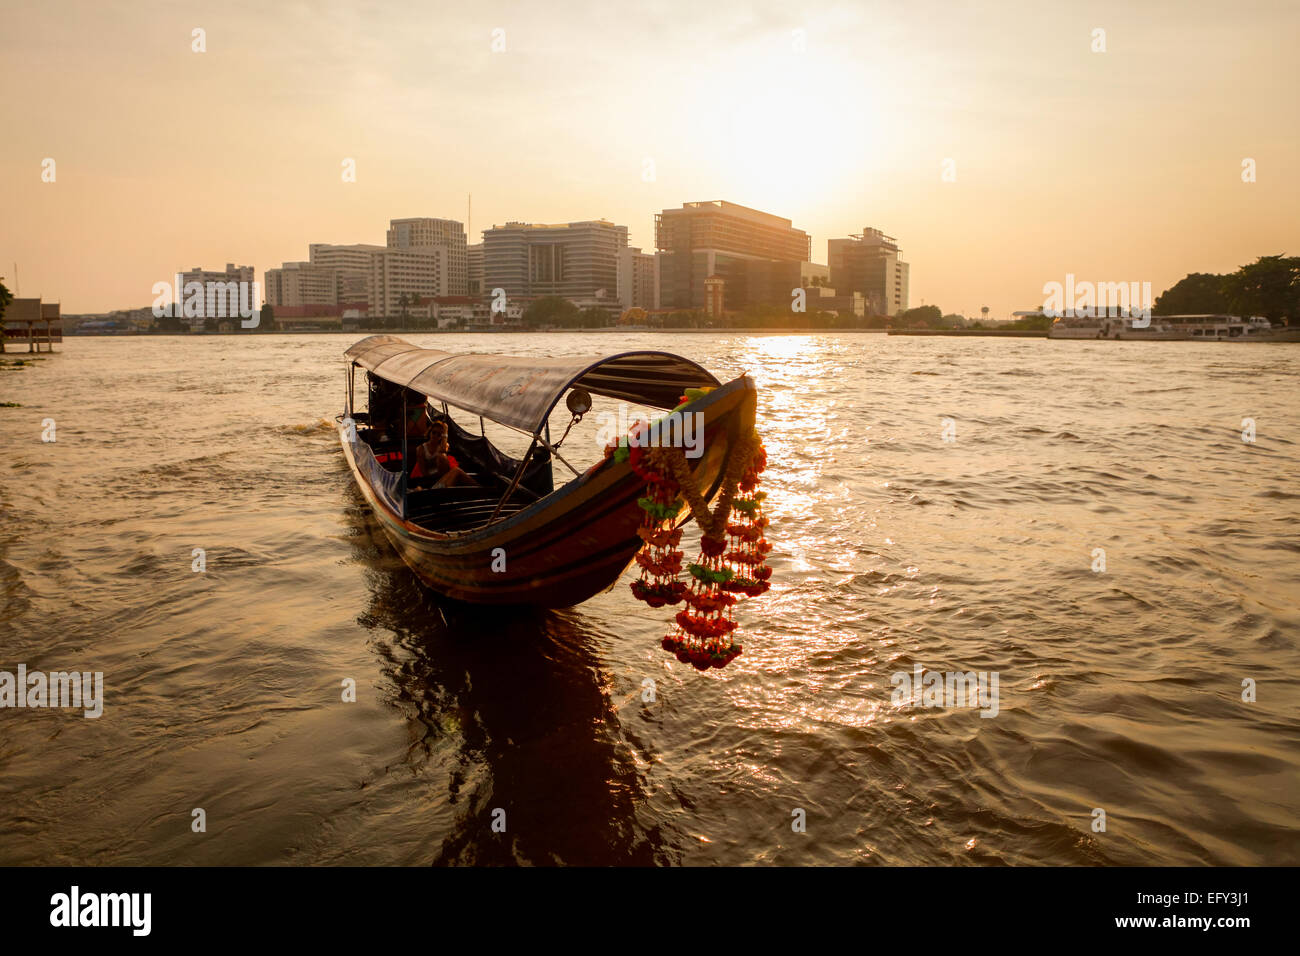 Lunga barca con decorazione floreale per il turismo sul fiume Chao Phraya a Bangkok, Thailandia. Foto Stock